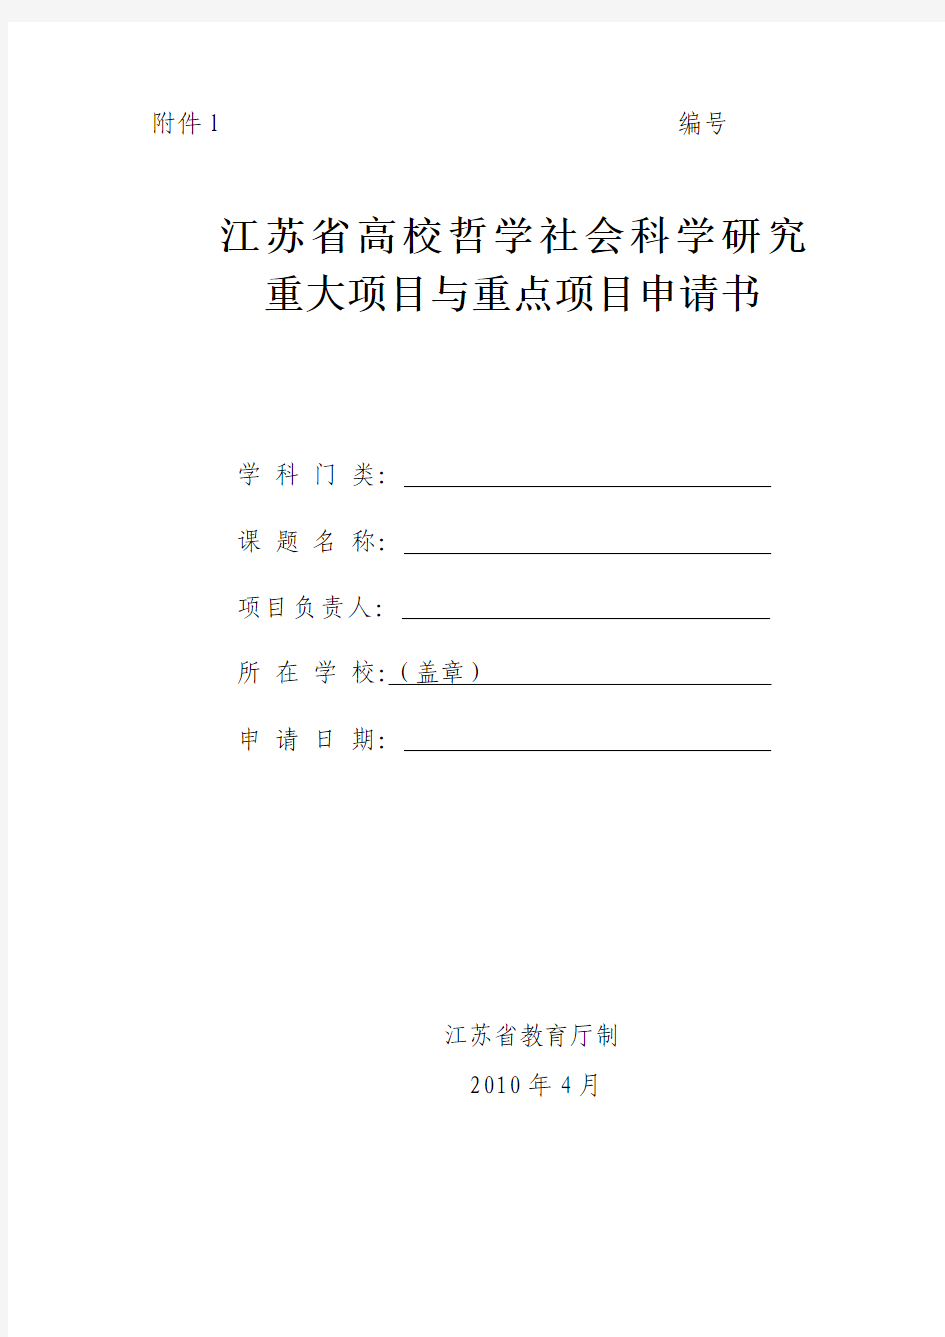 江苏省高校哲学社会科学研究重大项目与重点项目申请书